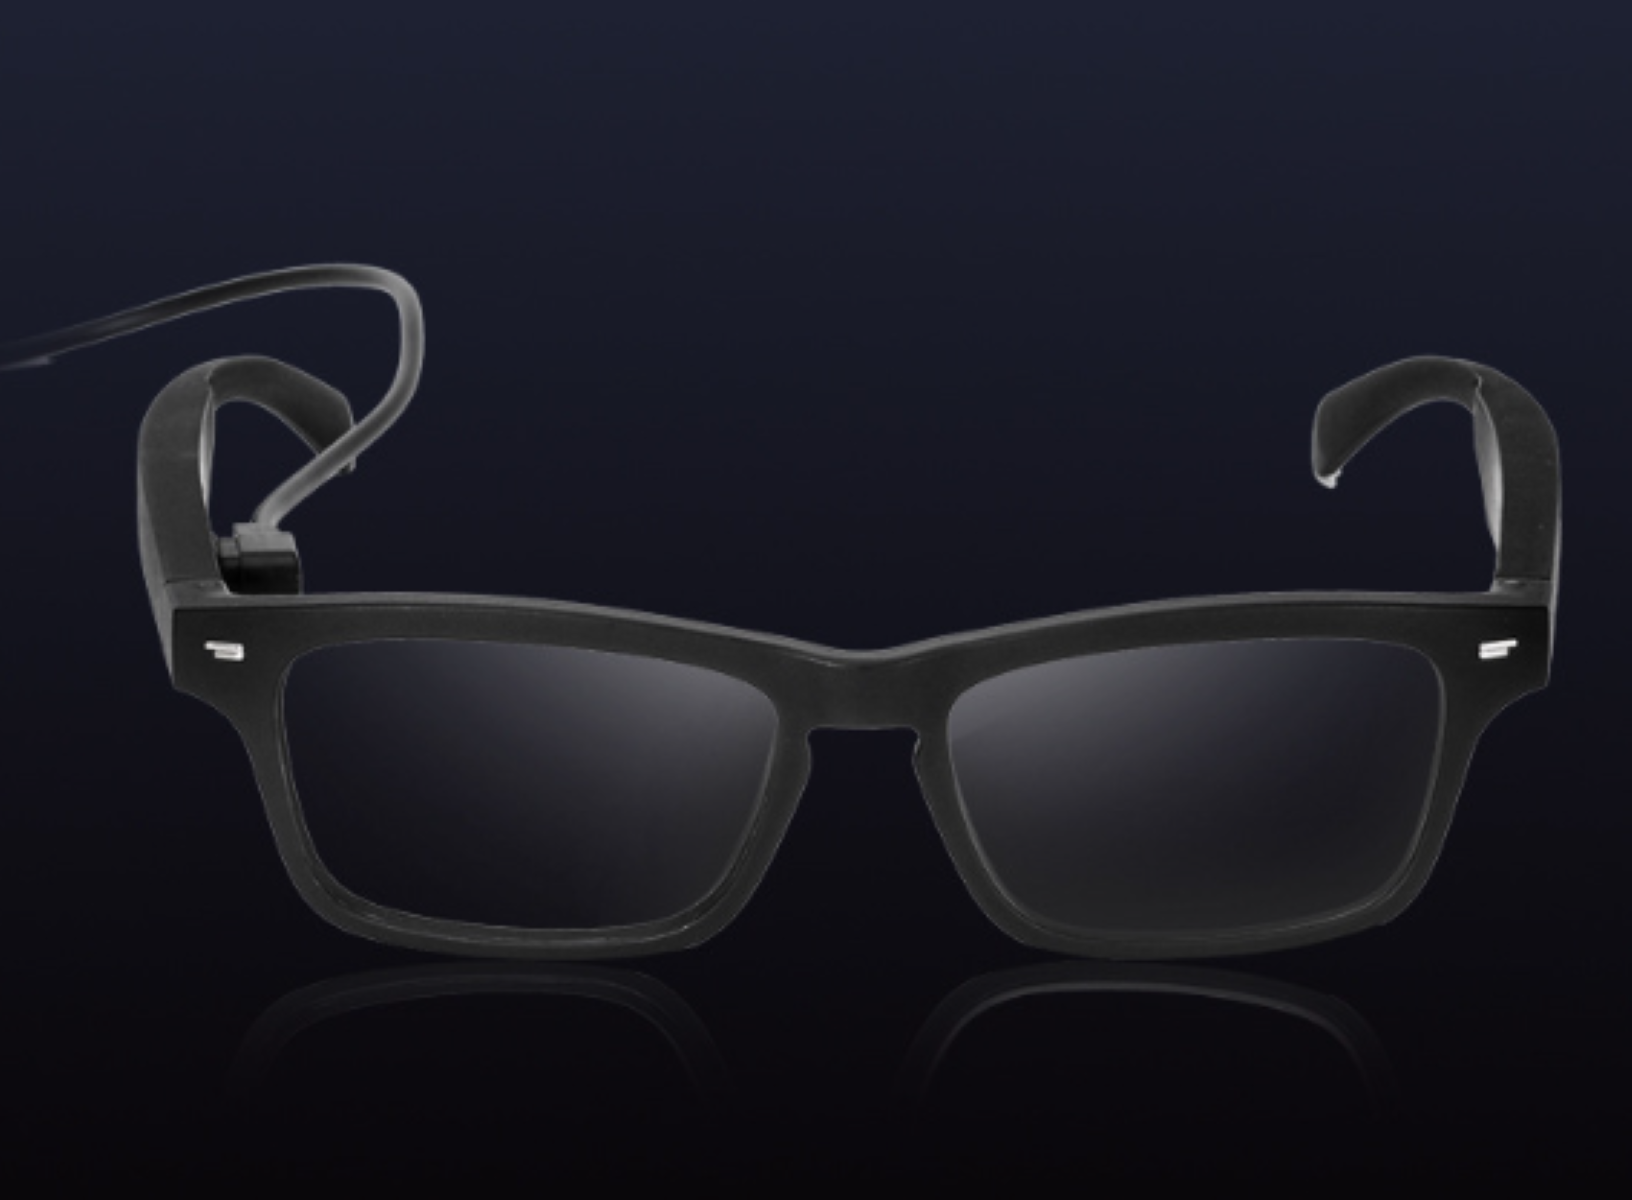 Bluetooth-Brille LACAMAX Bluetooth - Glasses Silver einem in Brille, Anrufe Musik und Silber Smart